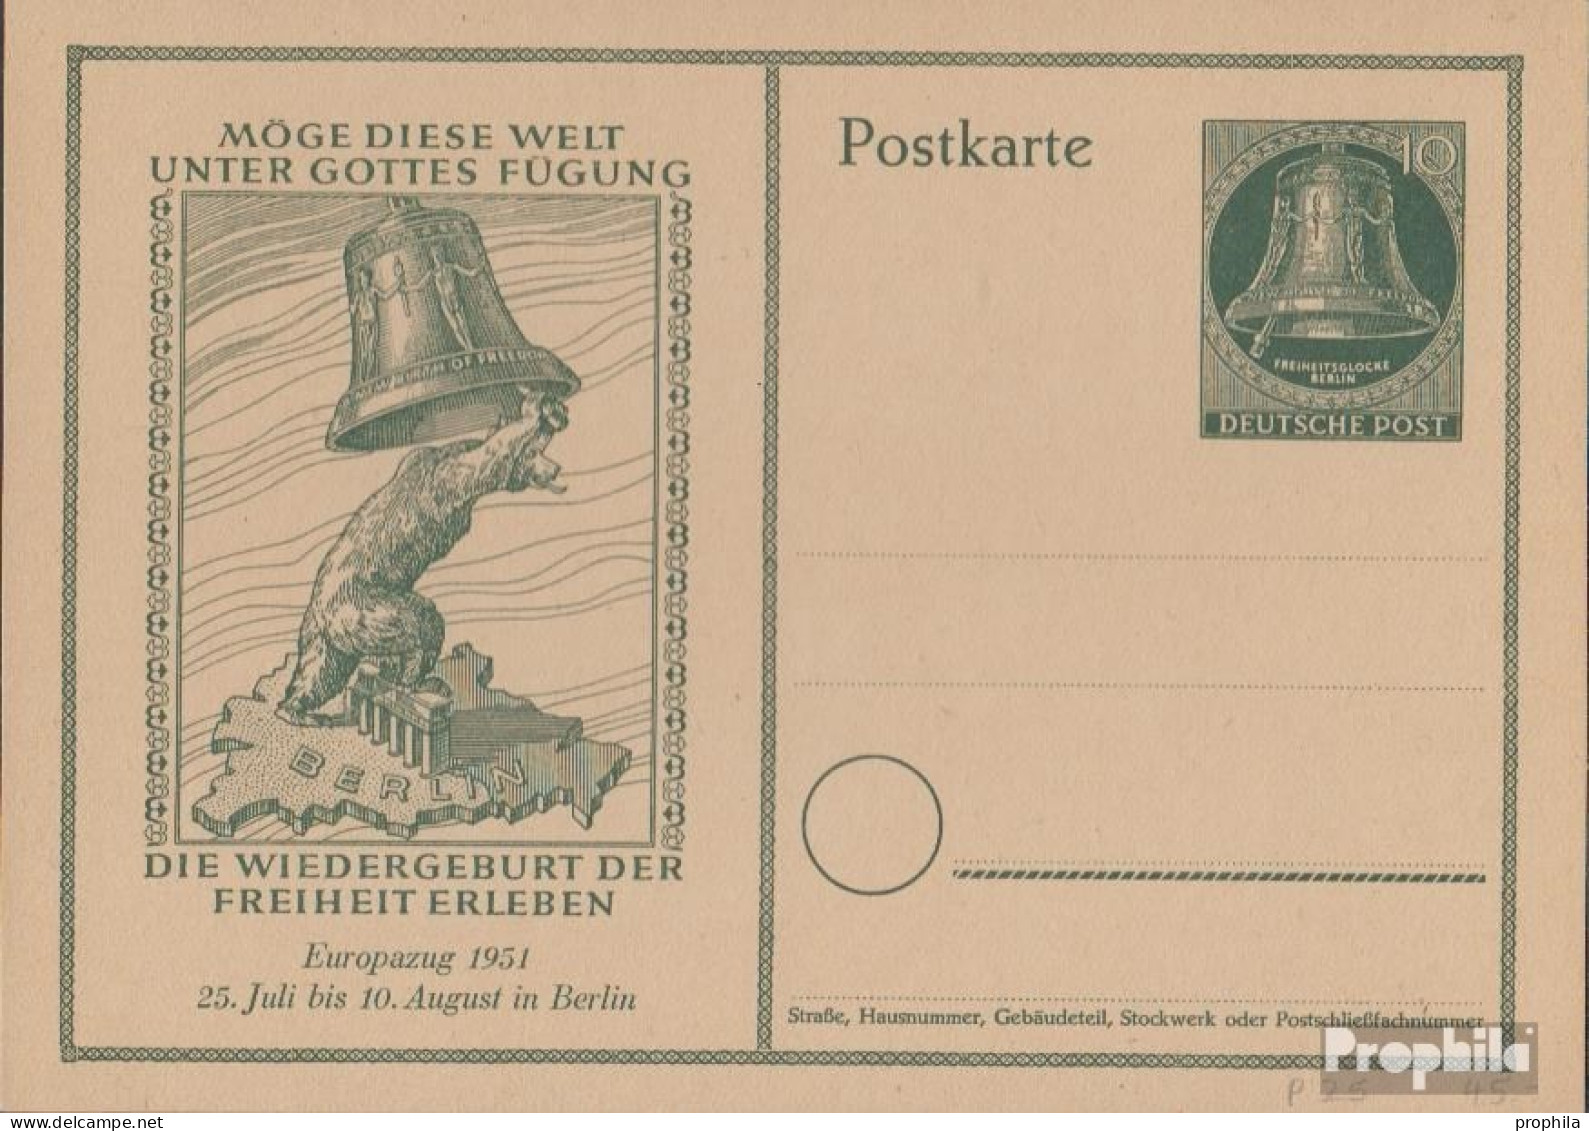 Berlin (West) P25 Amtliche Postkarte Gefälligkeitsgestempelt Gebraucht 1951 Glocke - Postales - Usados